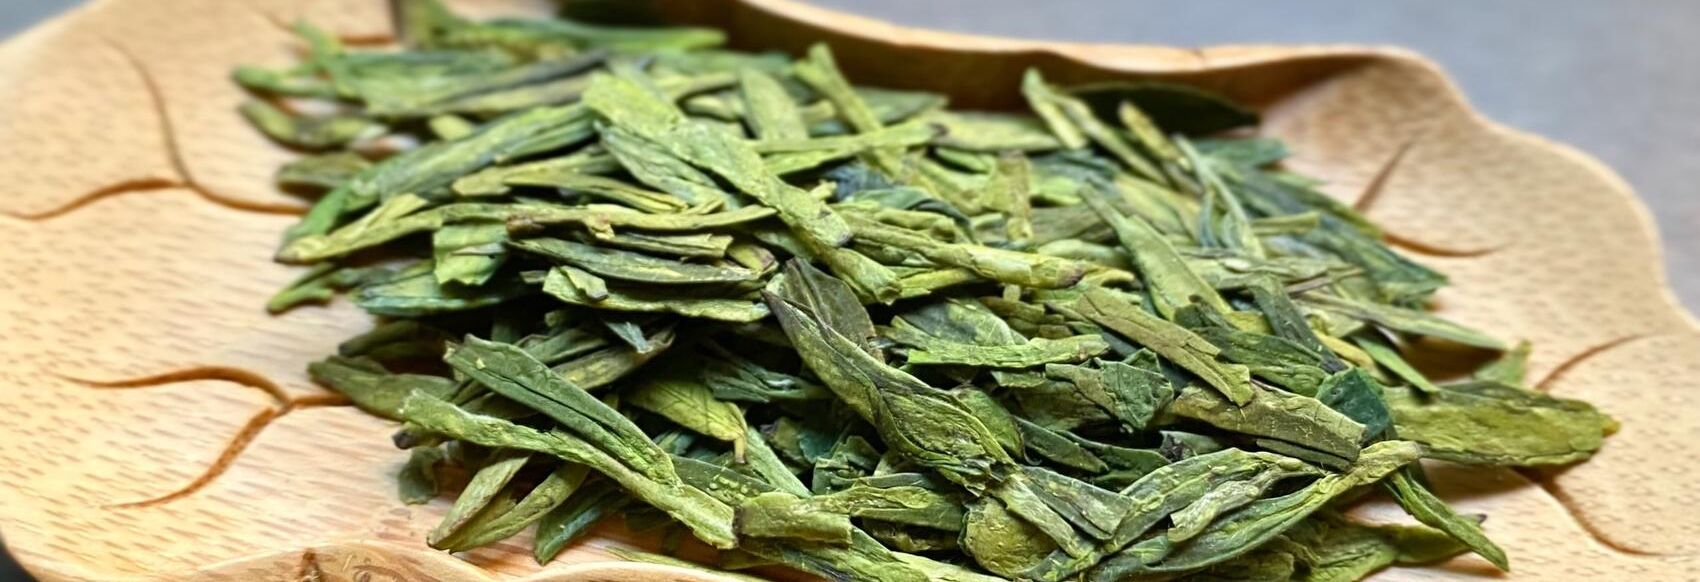 Почему зеленый чай горький и можно ли это исправить